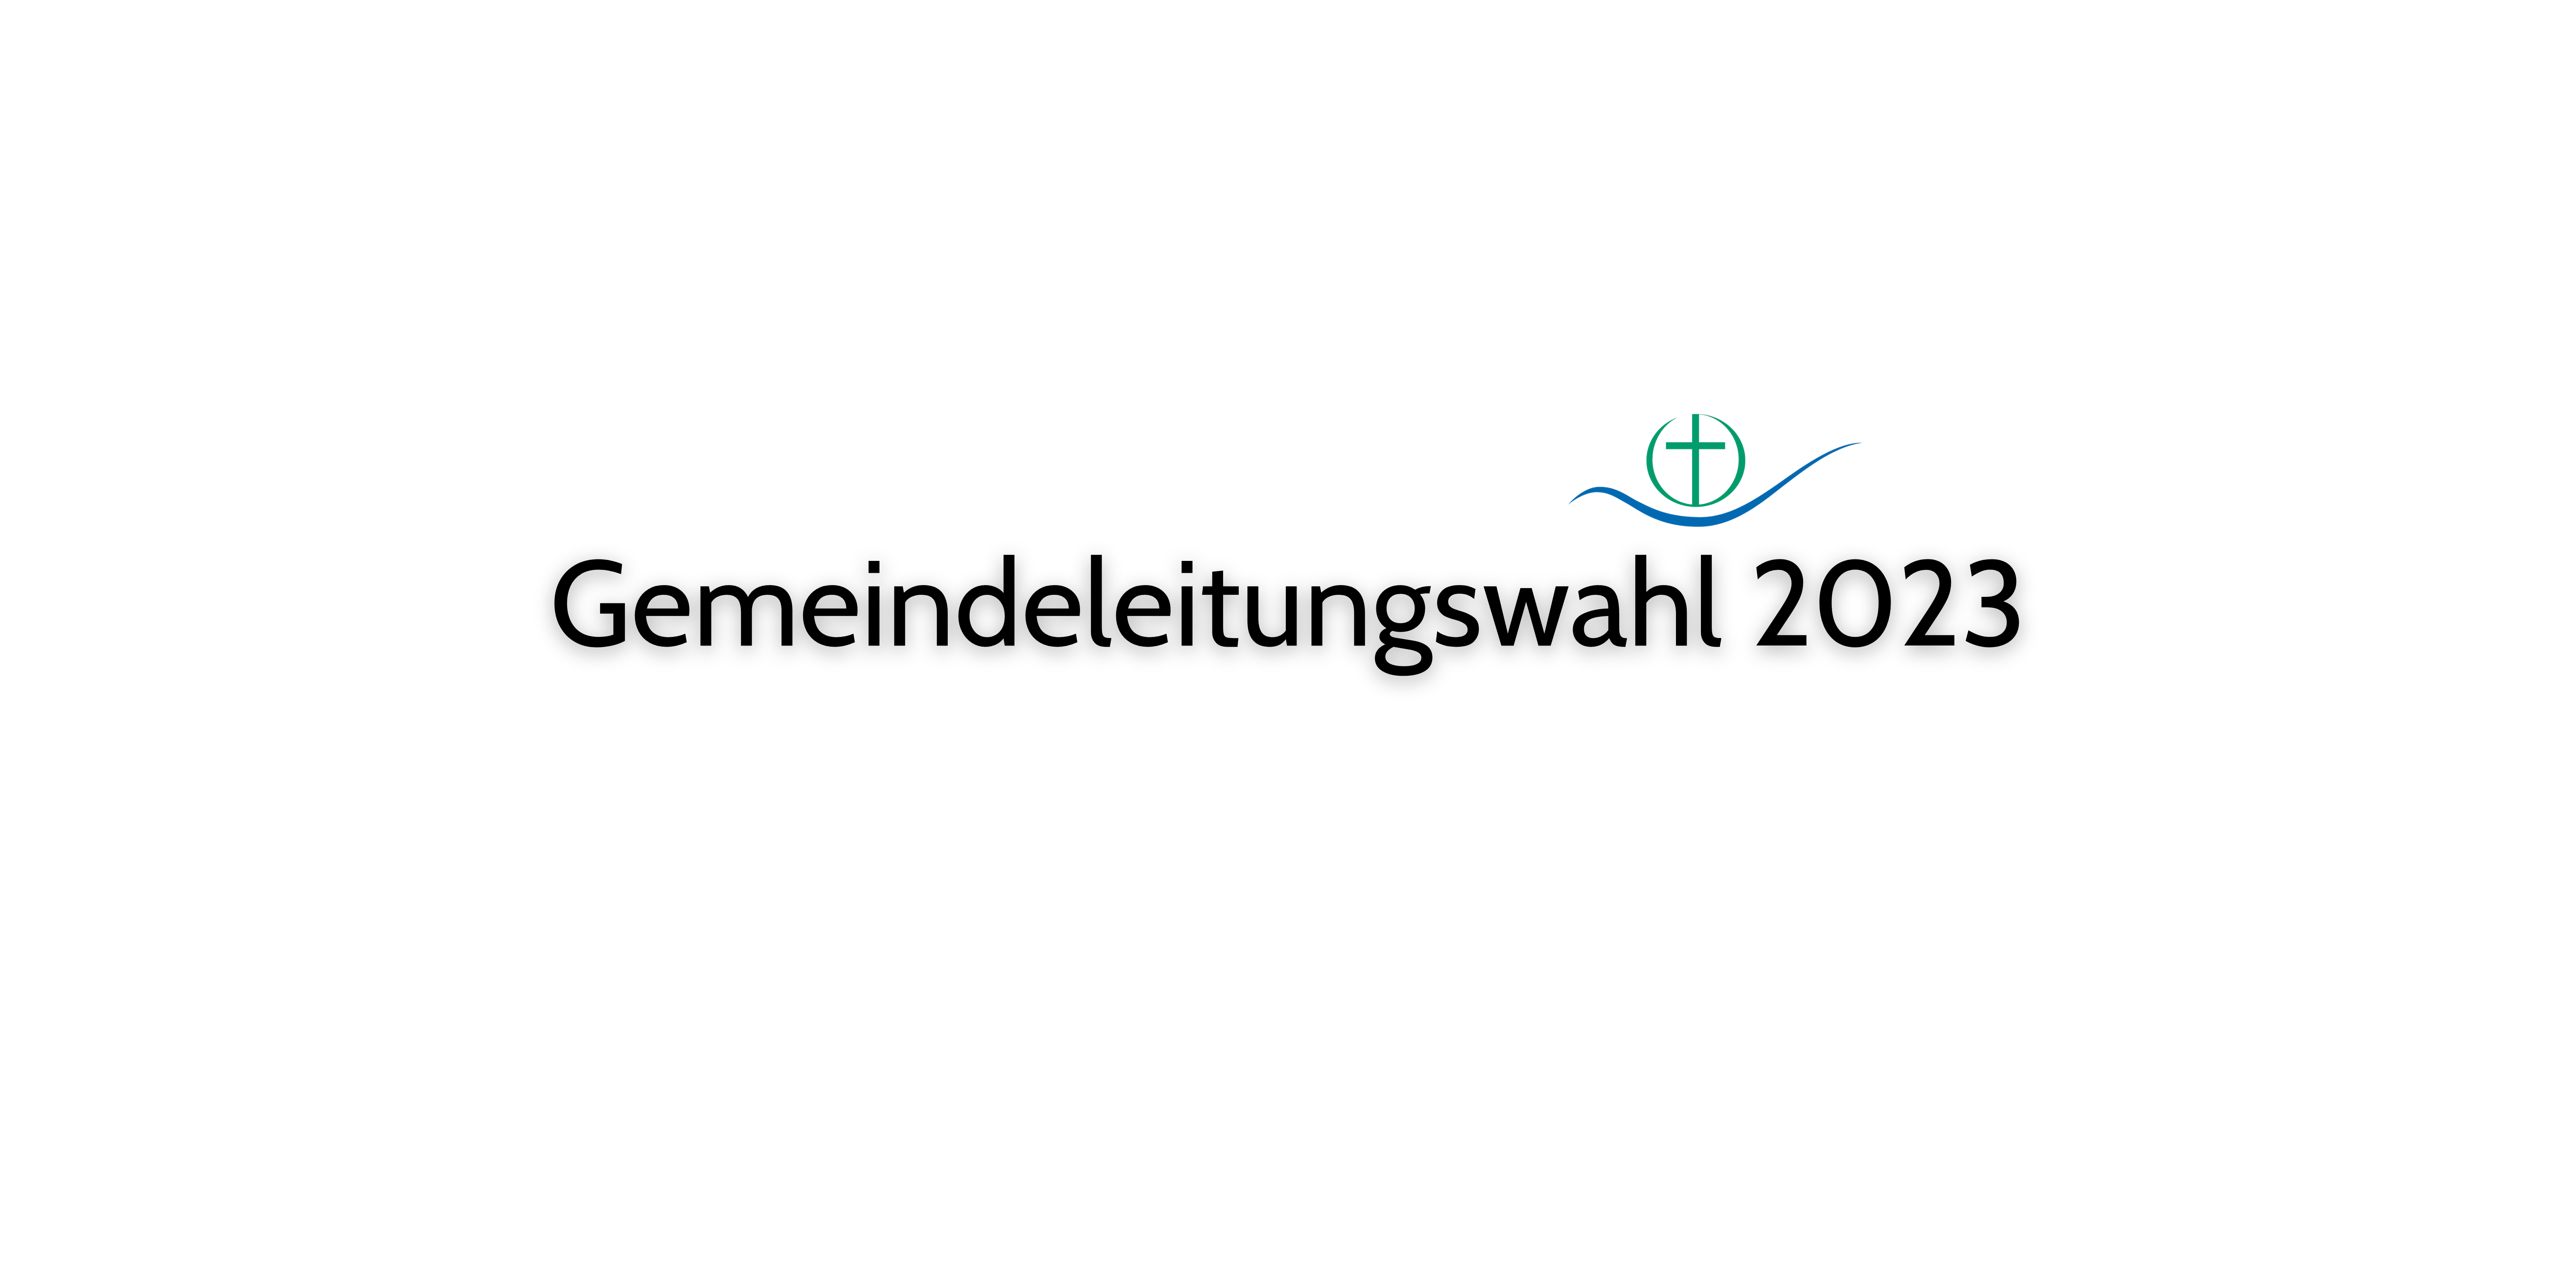 You are currently viewing Gemeindeleitungswahl 2023 in der FeG Lüneburg